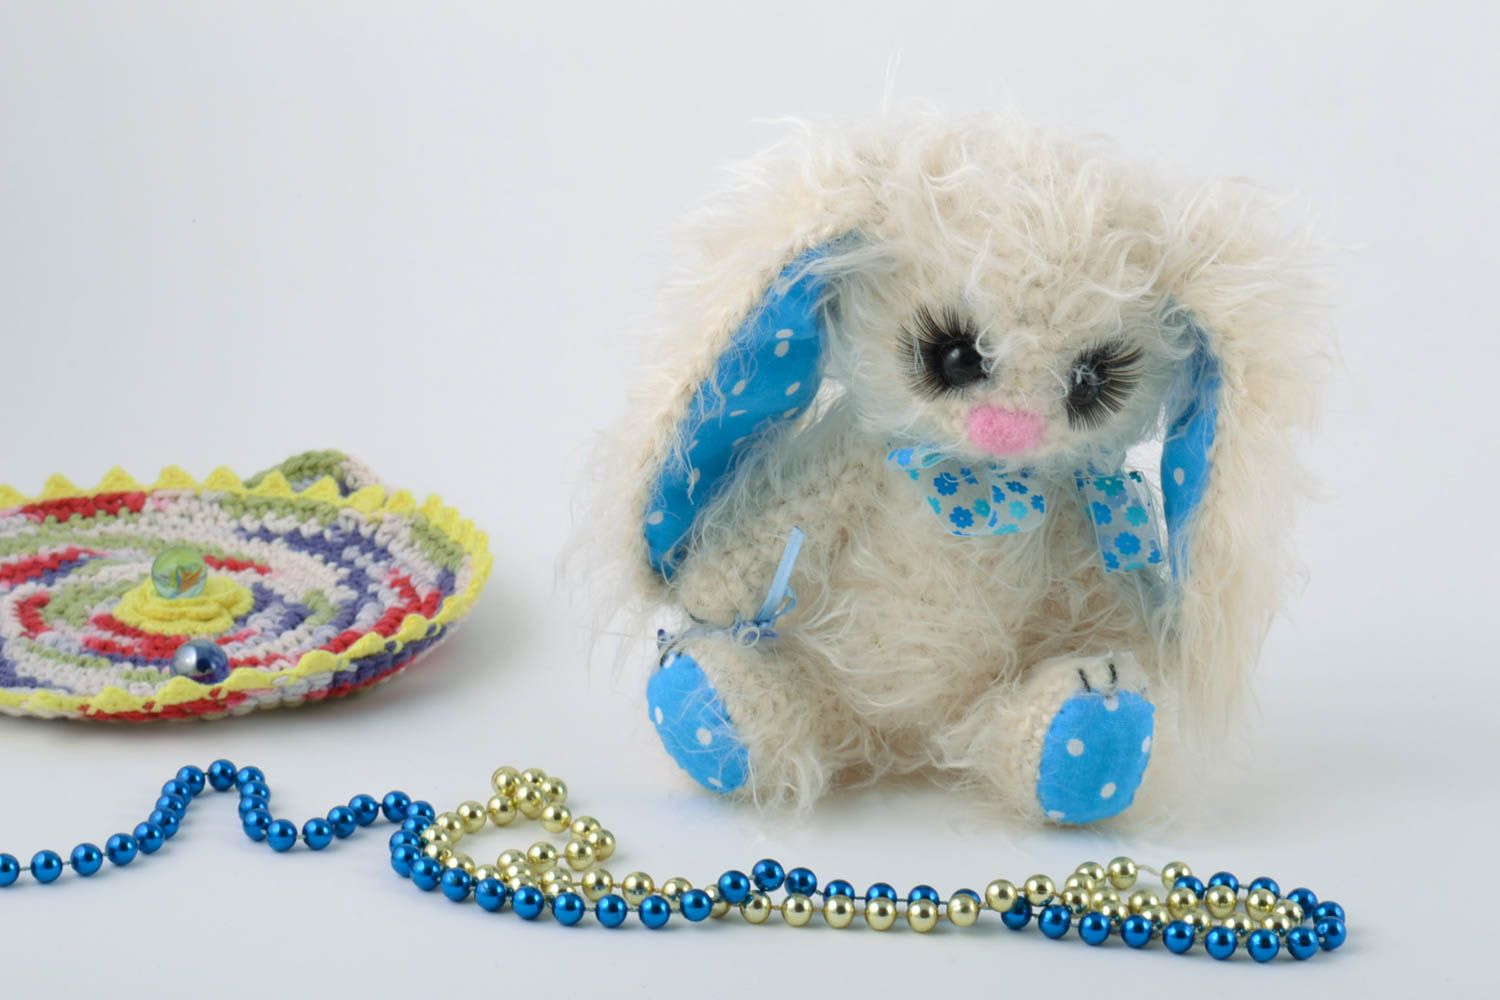 Мягкая вязаная игрушка в виде зайчика ручной работы белая с голубым симпатичная фото 1